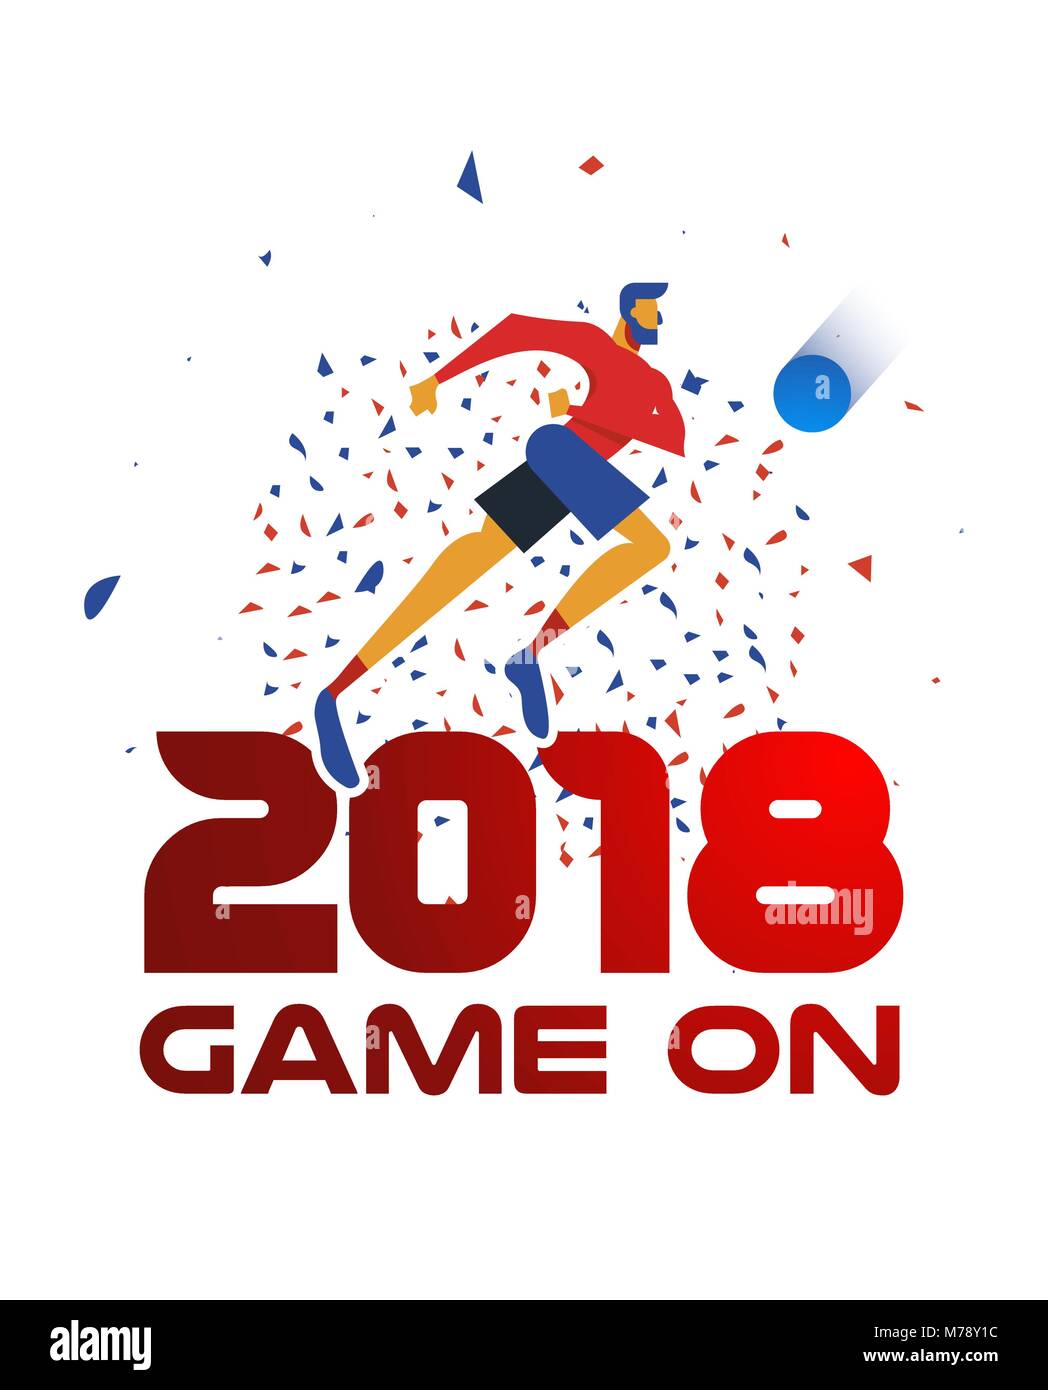 Festliche Plakatgestaltung für einen Sport 2018 Veranstaltung. Fußball-Spieler mit Ball mit Konfetti Hintergrund und Typografie Zitat in roter Farbe. EPS 10 Vektor. Stock Vektor